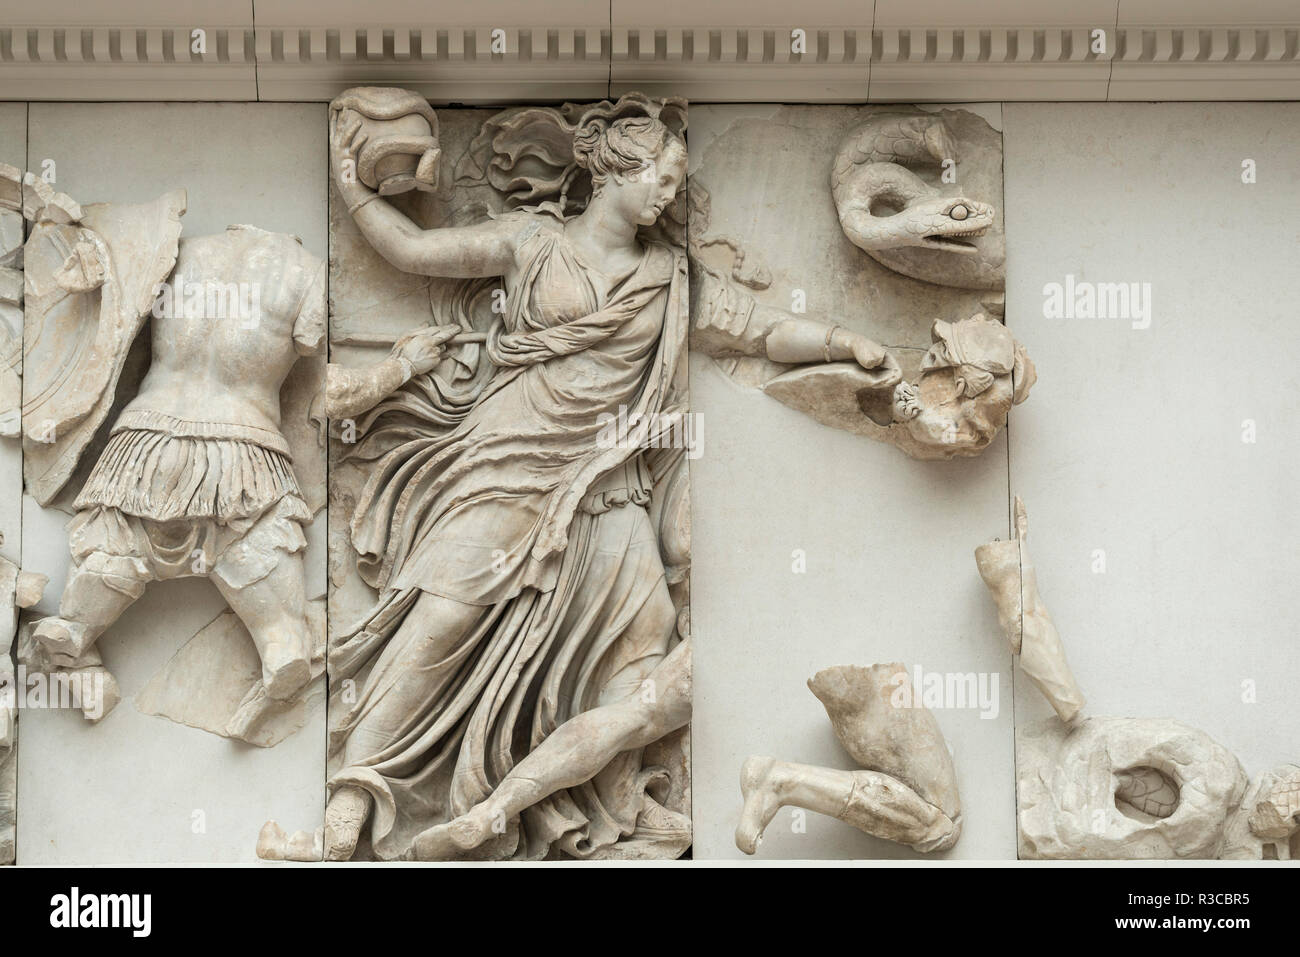 Berlin. Deutschland. Pergamon Museum. Pergamonaltar. Gigantenfries,Panel, eine junge Göttin, möglicherweise Nyx oder Persephone, schleudert eine Vase mit einer s Stockfoto